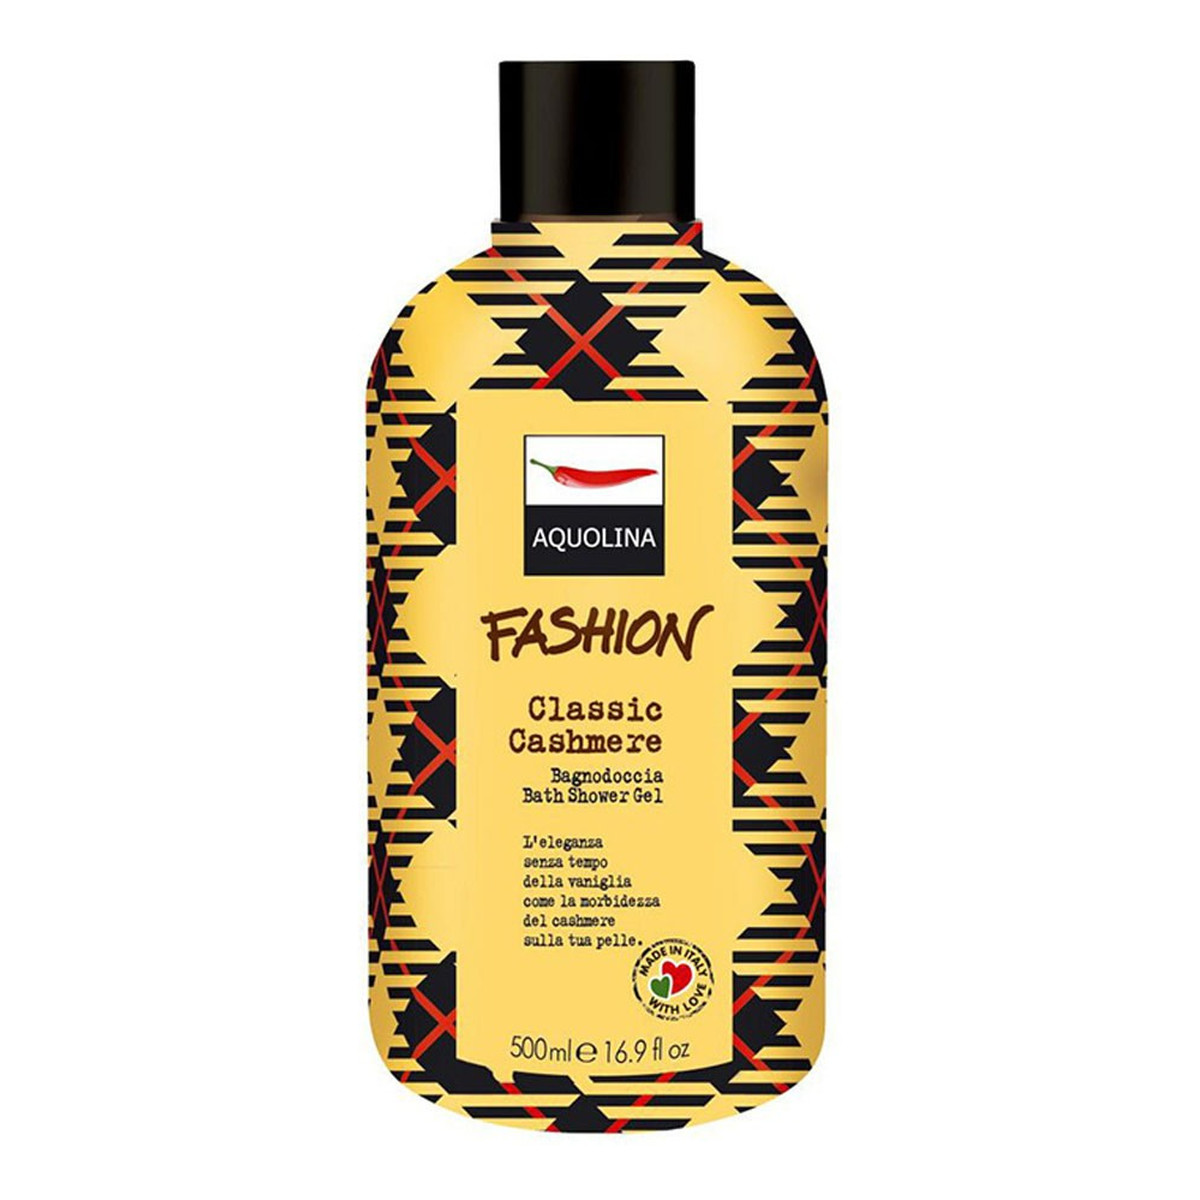 Aquolina Fashion płyn do kąpieli i pod prysznic Klasyczny Kaszmir 500ml